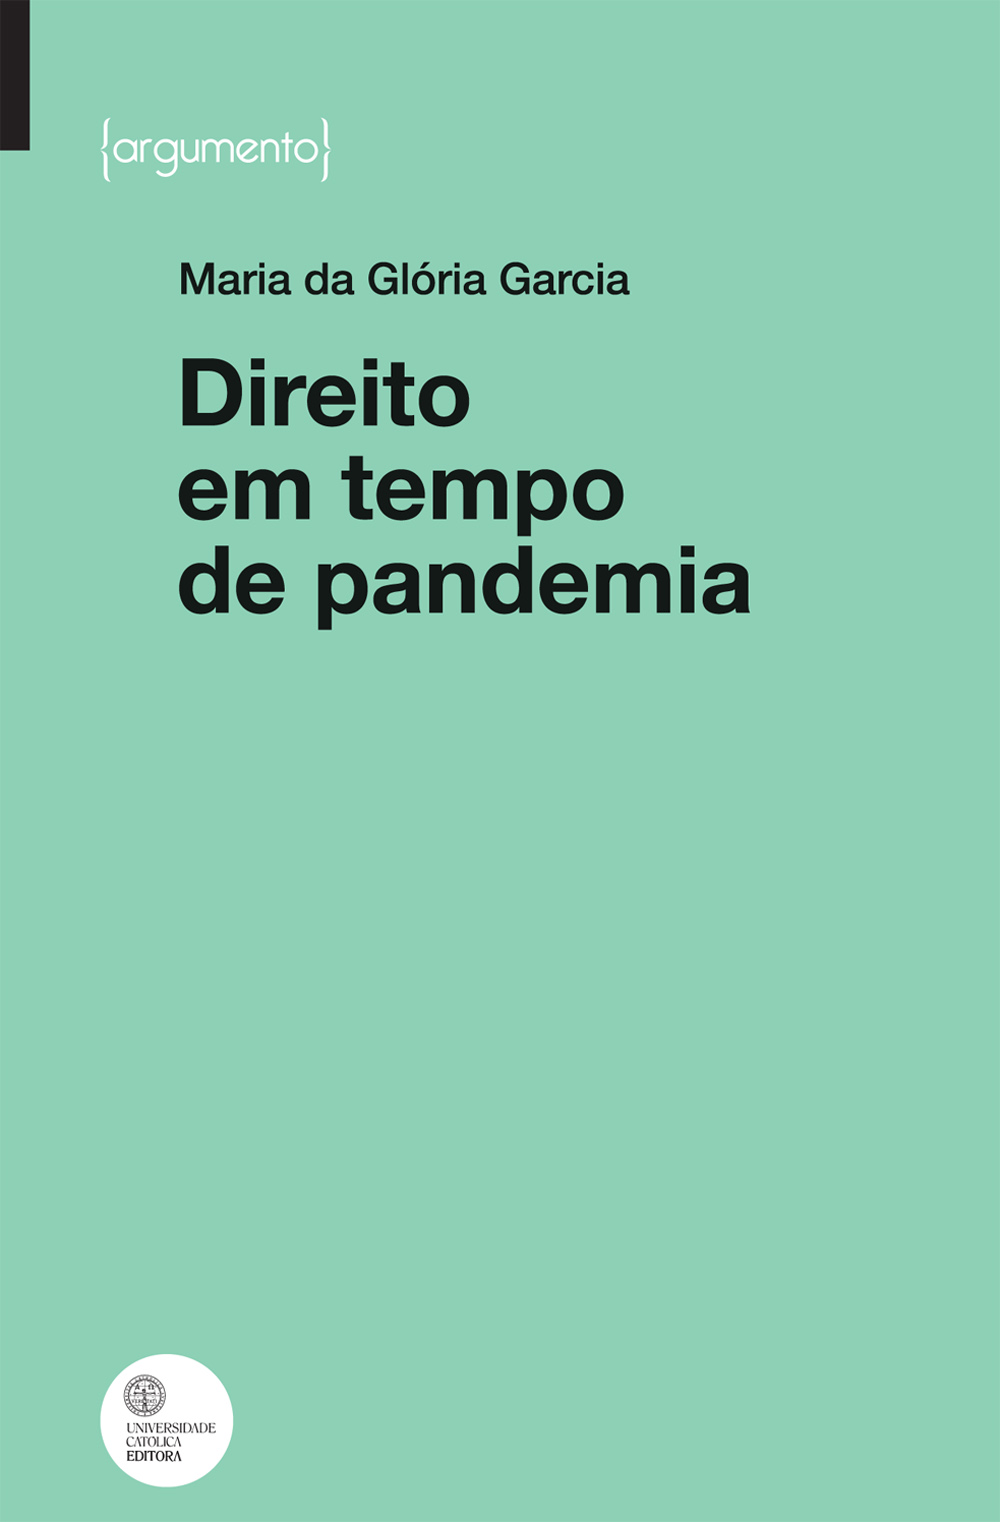 DIREITO EM TEMPO DE PANDEMIA - Universidade Católica Editora